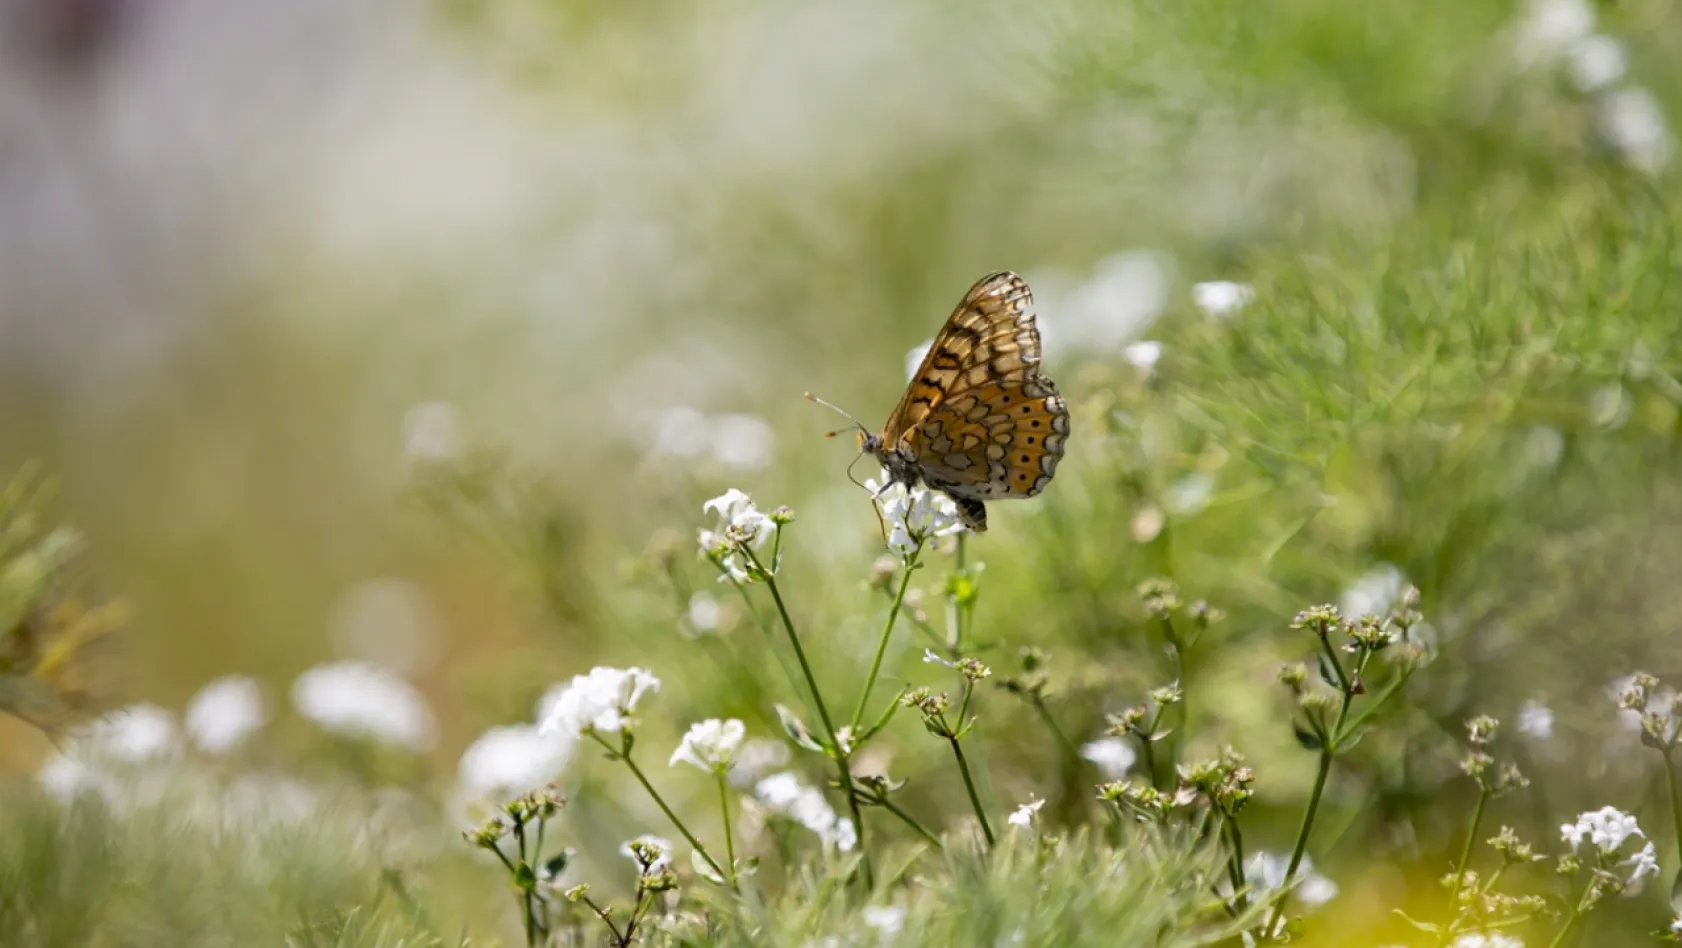 Tunceli'de tabiatın yeşermesiyle kelebek türleri de ortaya çıktı